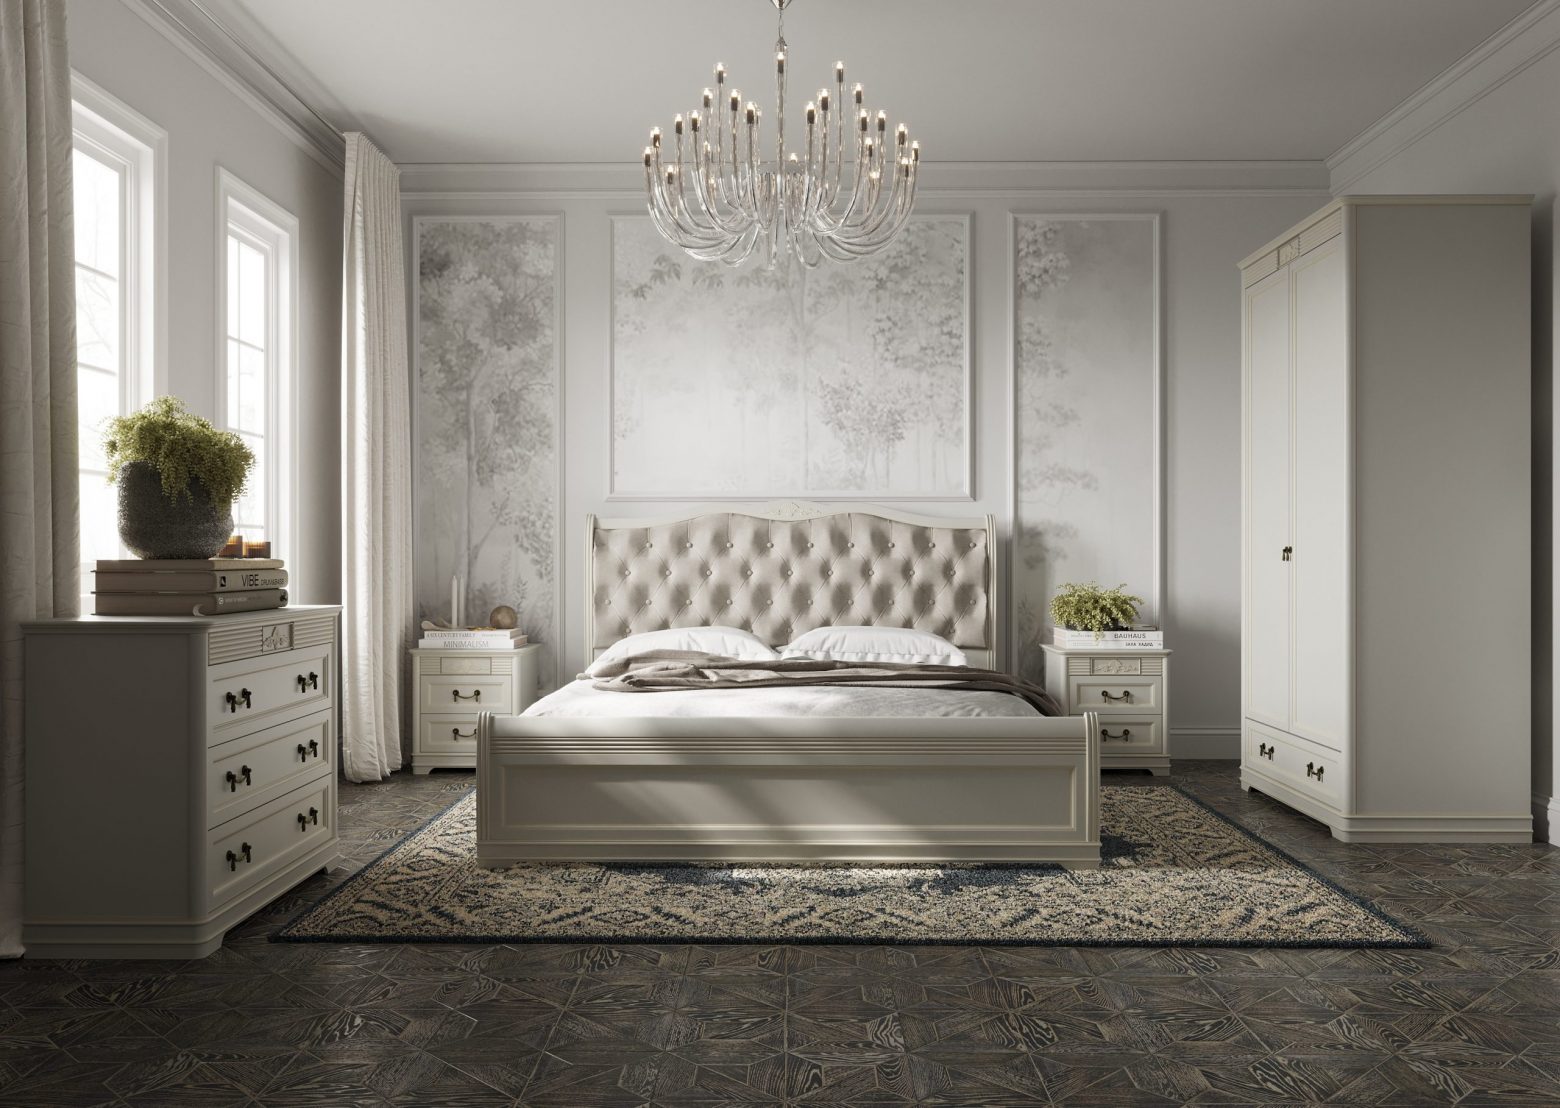 Спальня Тоскана Италконцепт - кровать с классическим резным изголовьем в светлом цвете